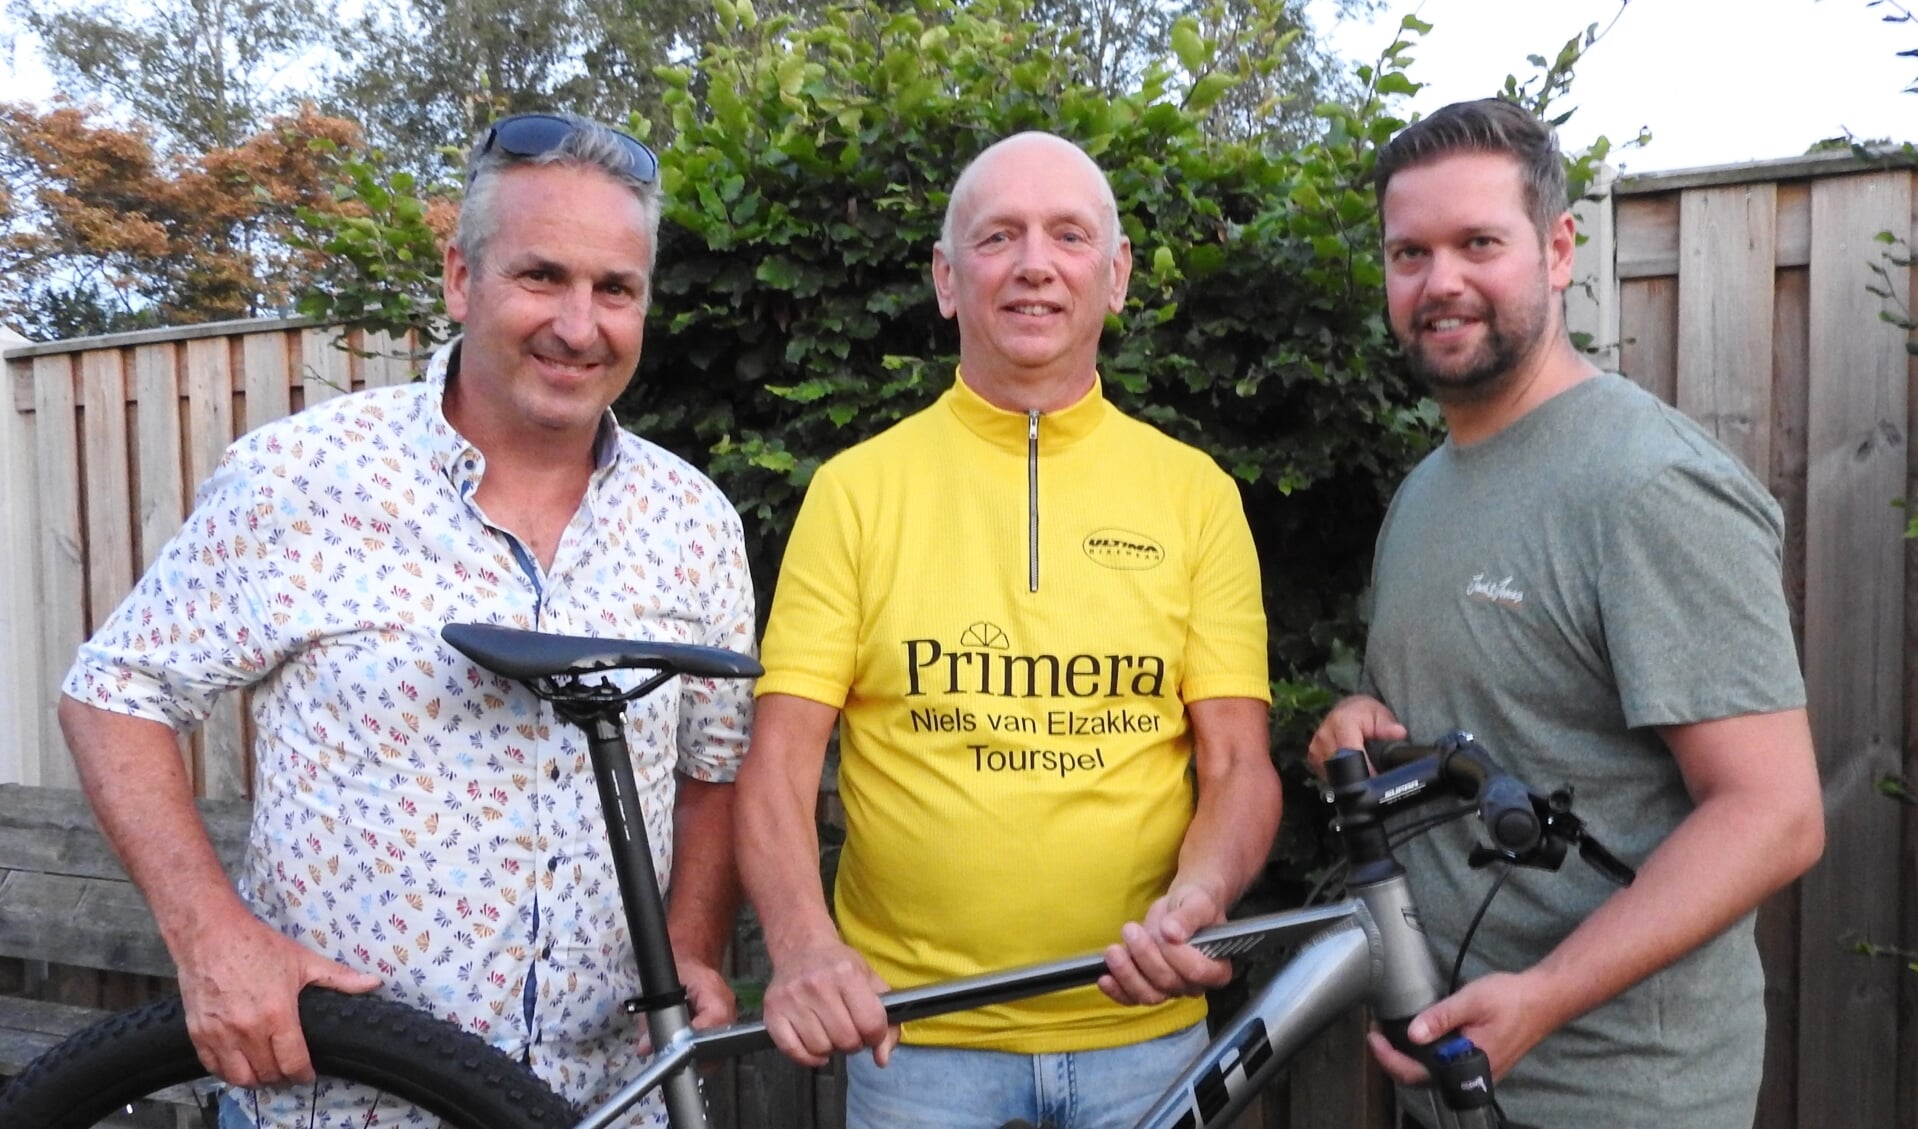 Felicitaties en Sirocco Mountainbike voor Wim van Duijn uit handen van tourspel-directie Niels van Elzakker en Ivar Brouwer.